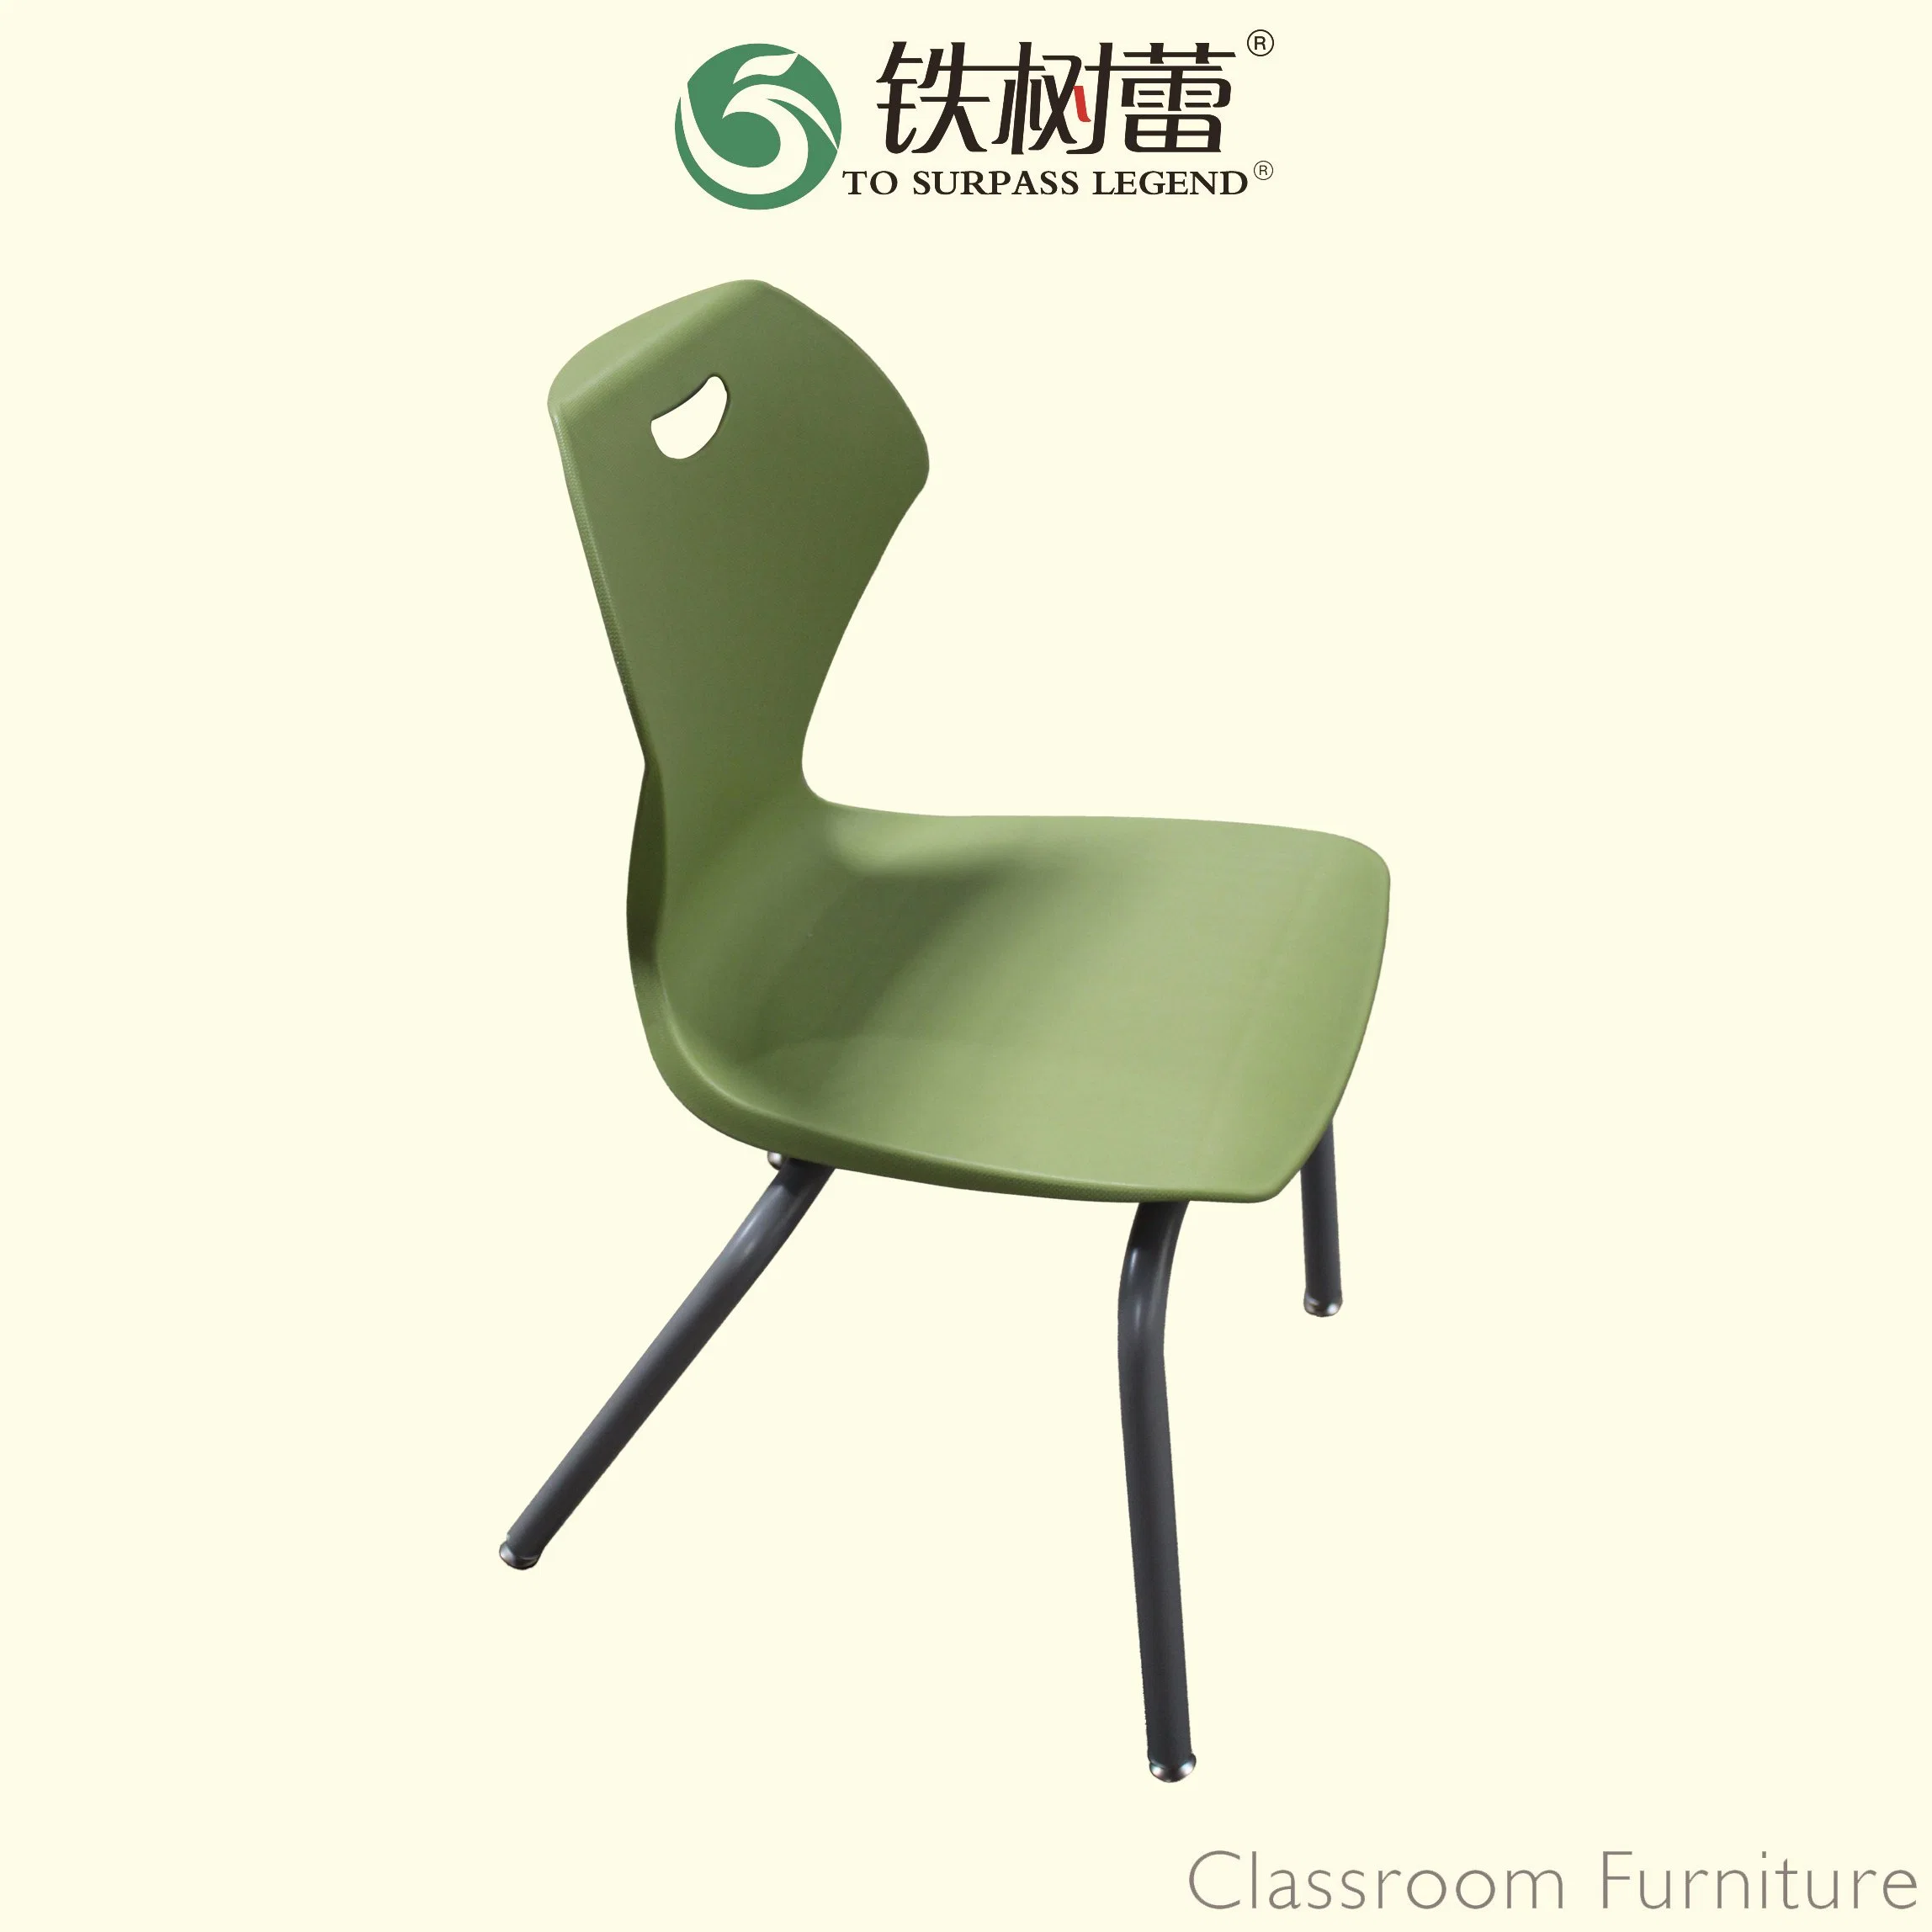 Produto novo aluno de plástico cadeira (BZ-0154) Mobiliário escolar